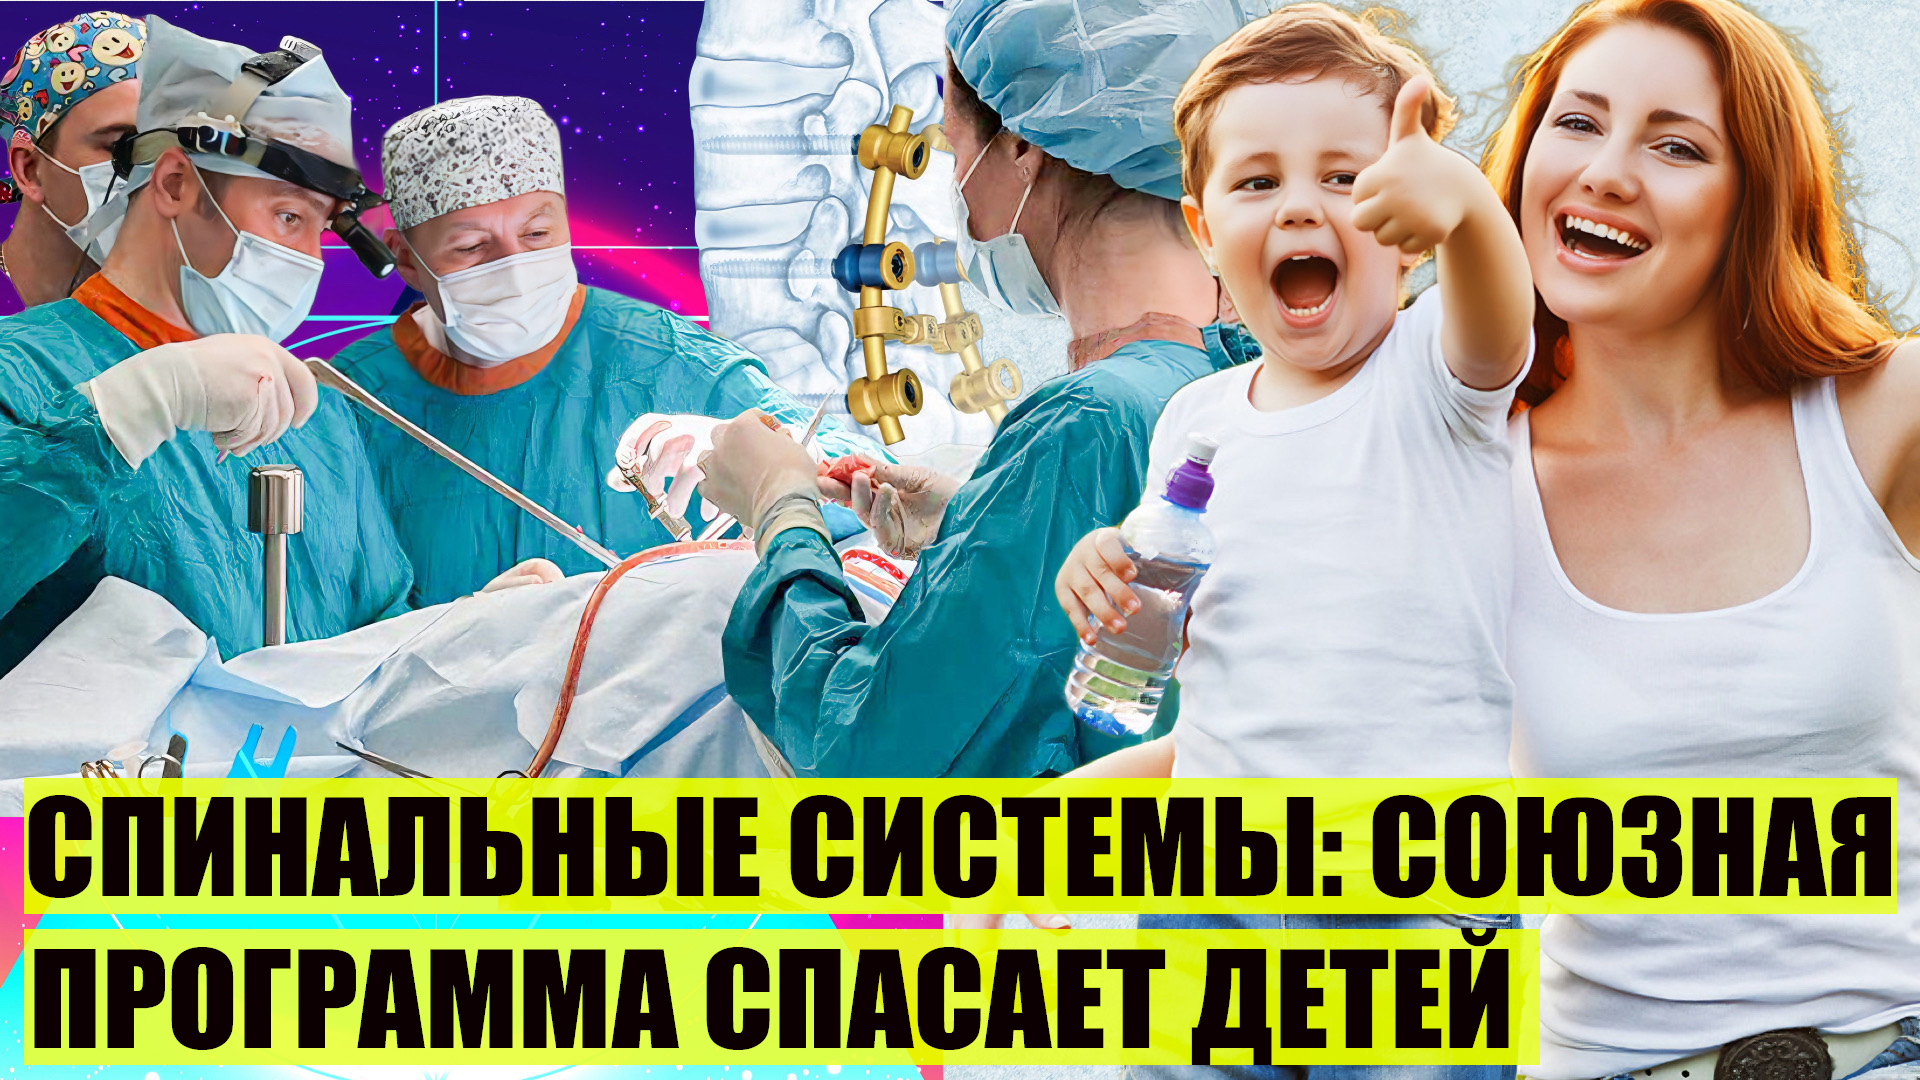 Минск-Москва | "Спинальные системы": как союзная программа спасает детей?